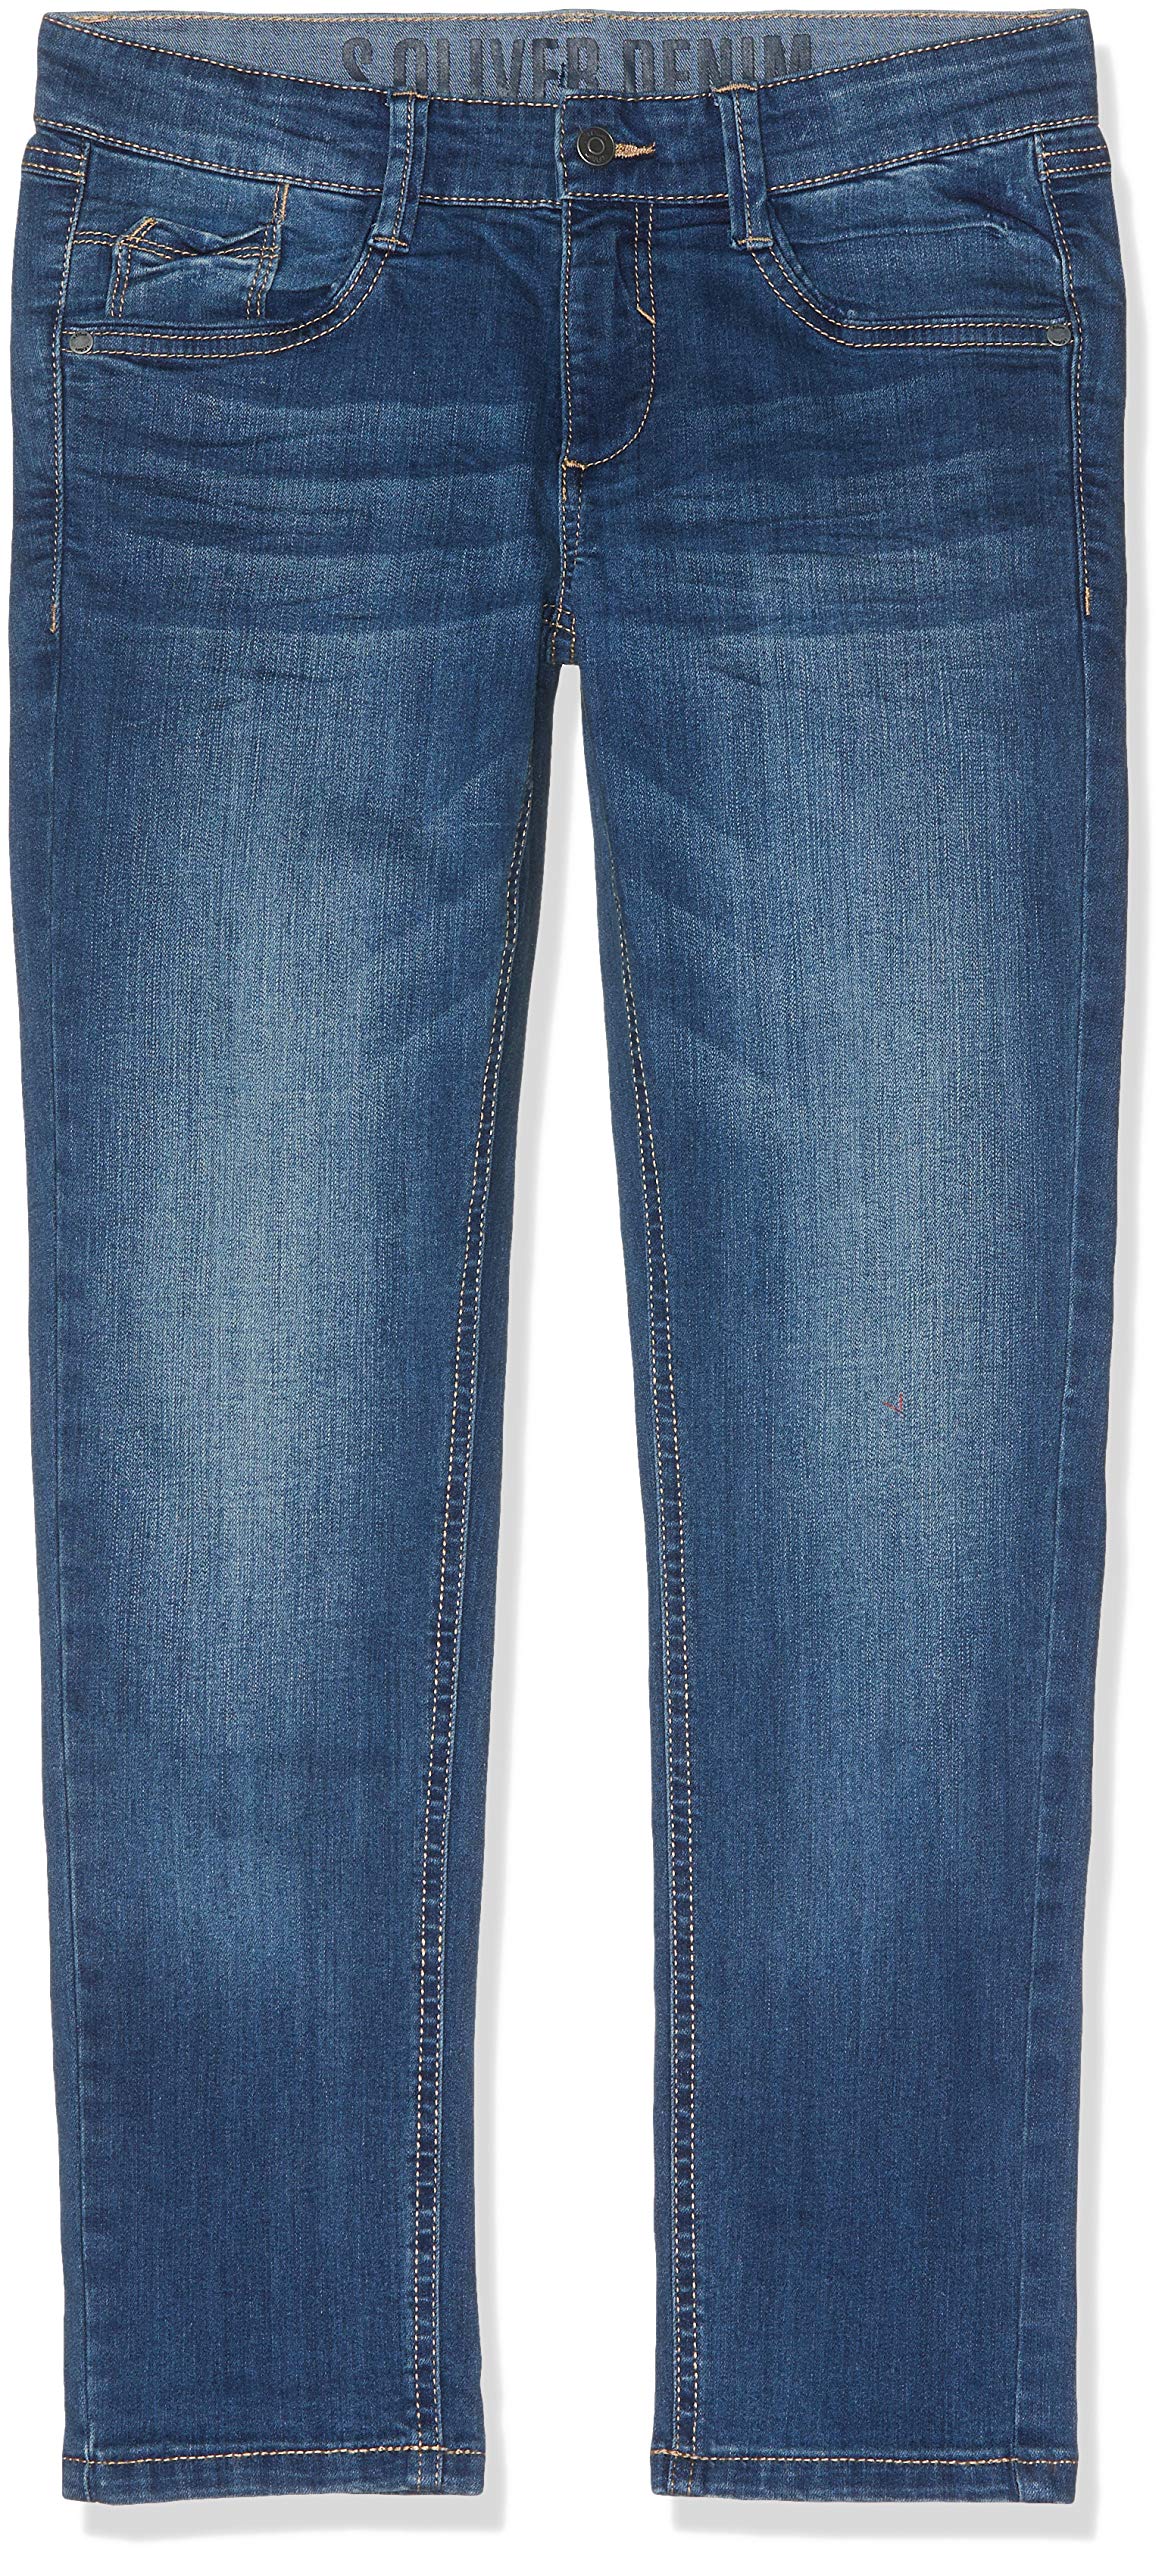 s.Oliver Jungen 75.899.71.0623 Jeans, Blau (Blue Denim Stretch Z), 134 Große Größen